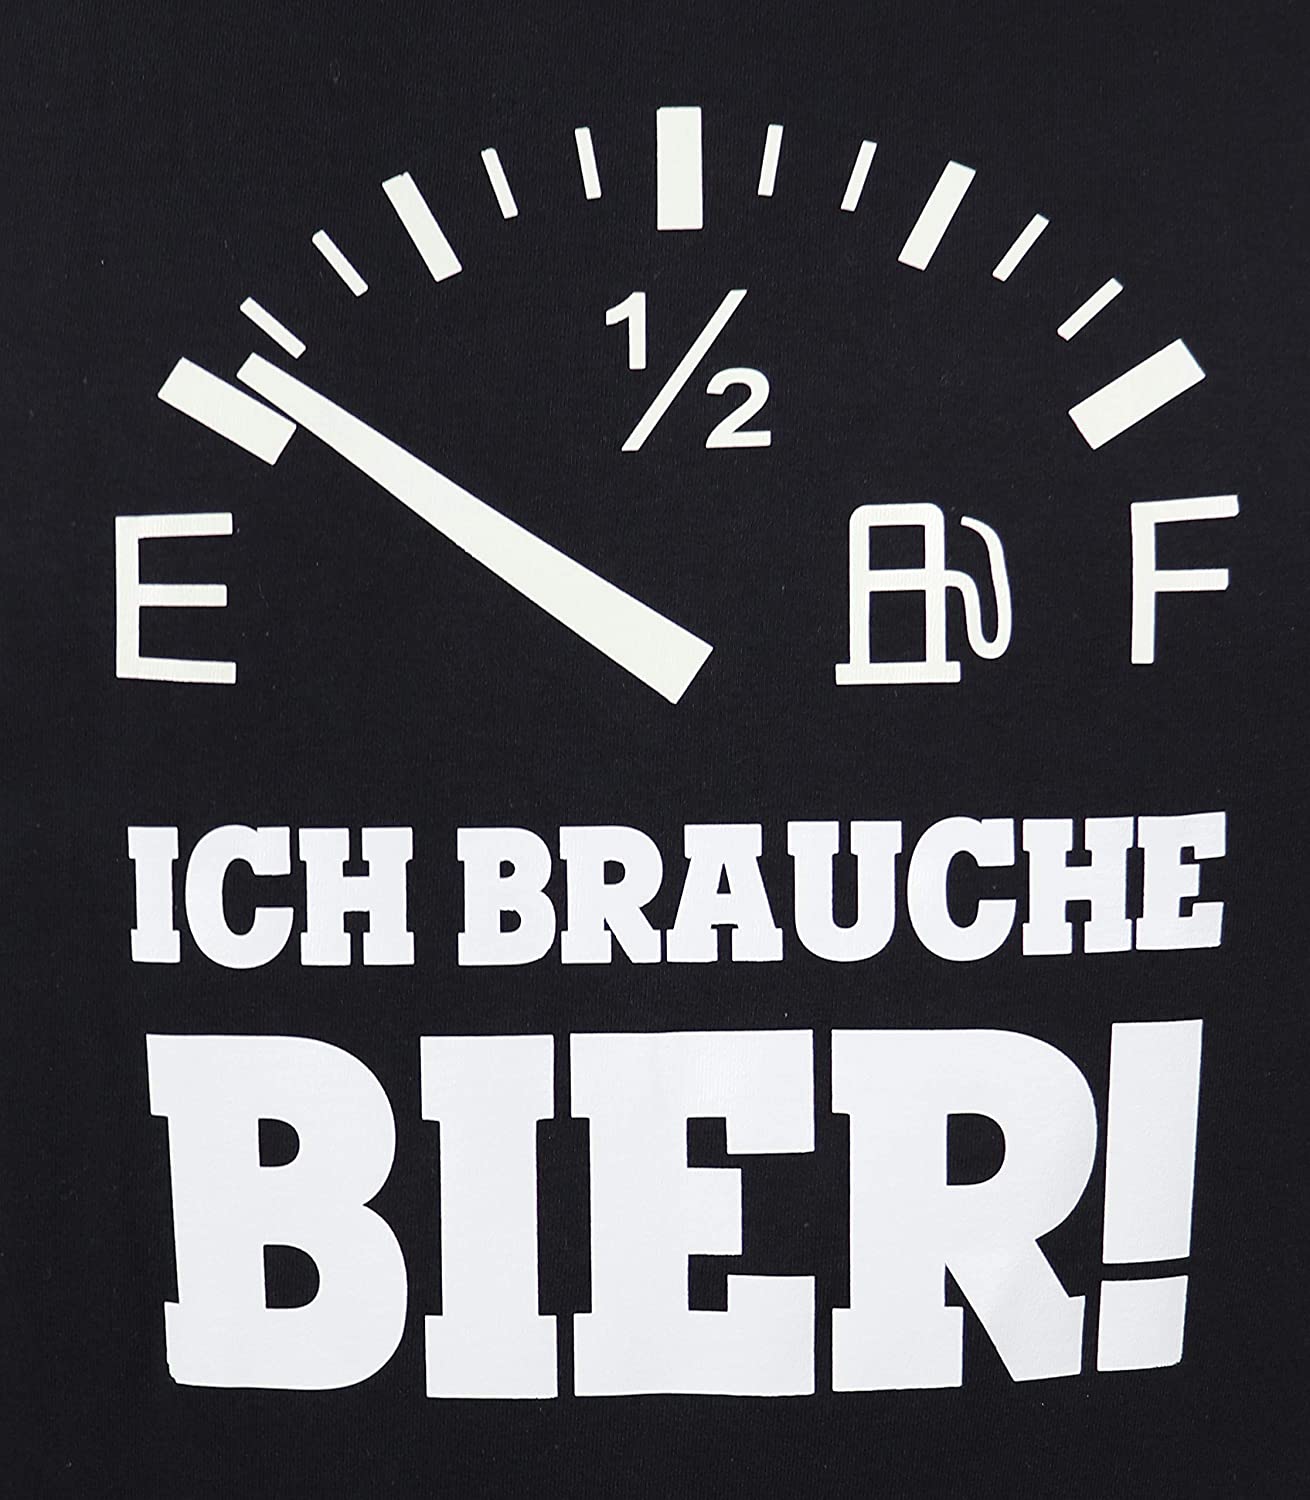 T-Shirt Bier-Tank leer, Ich Brauche Bier!, Funshirt, Trinken, Geschenk, Urlaub, Party (Brauche Bier, M)